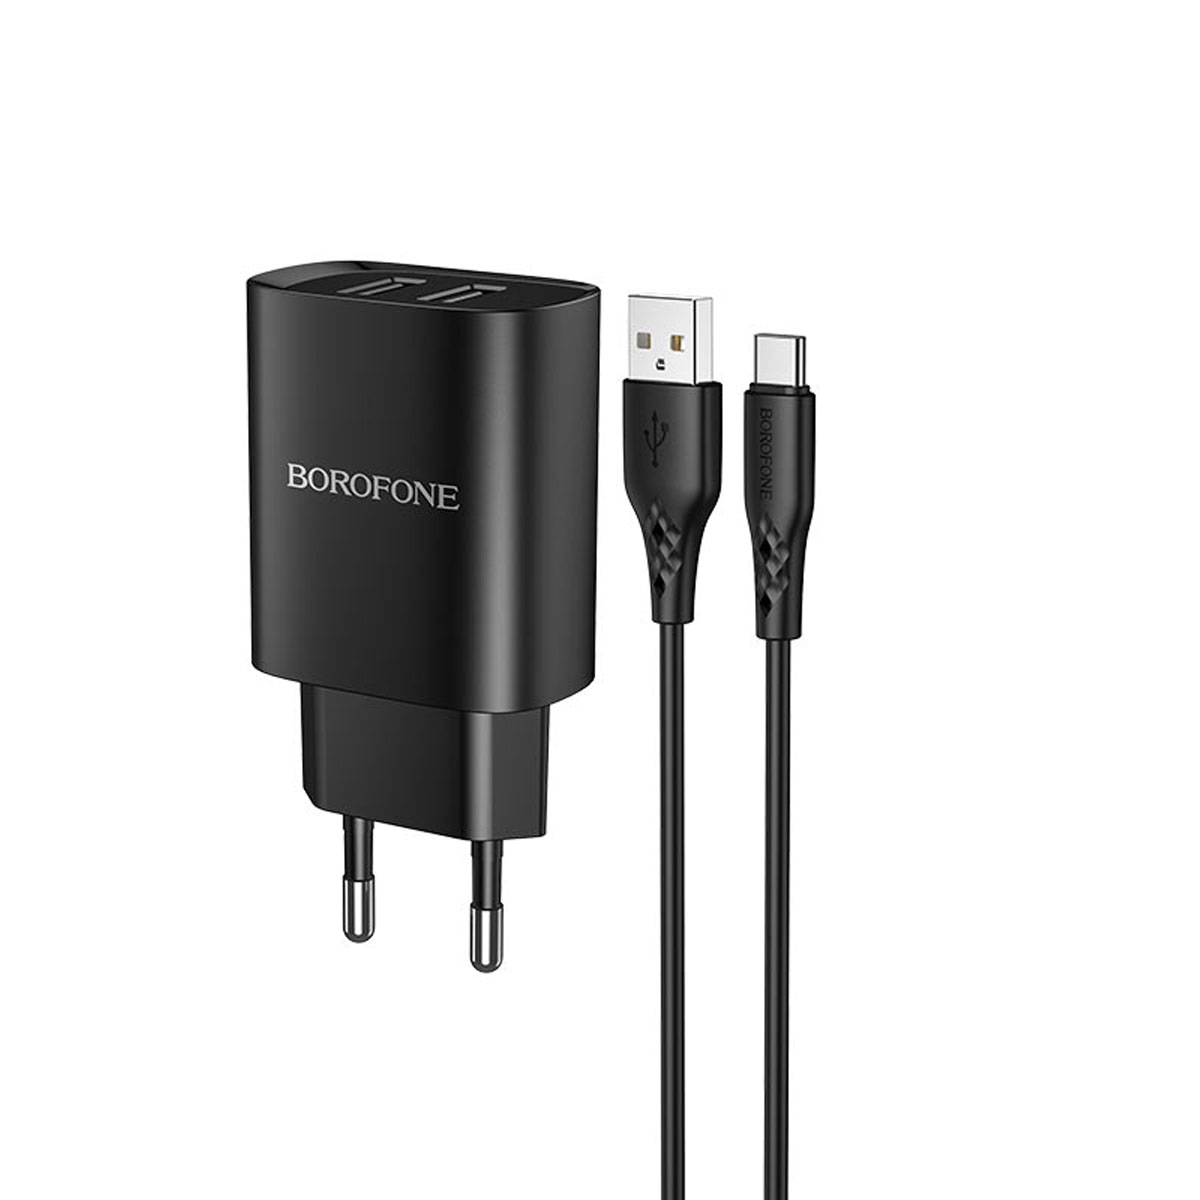 СЗУ (Сетевое зарядное устройство) BOROFONE BN2 Super fast с кабелем USB Type C, 2.1A, длина 1 метр, цвет черный